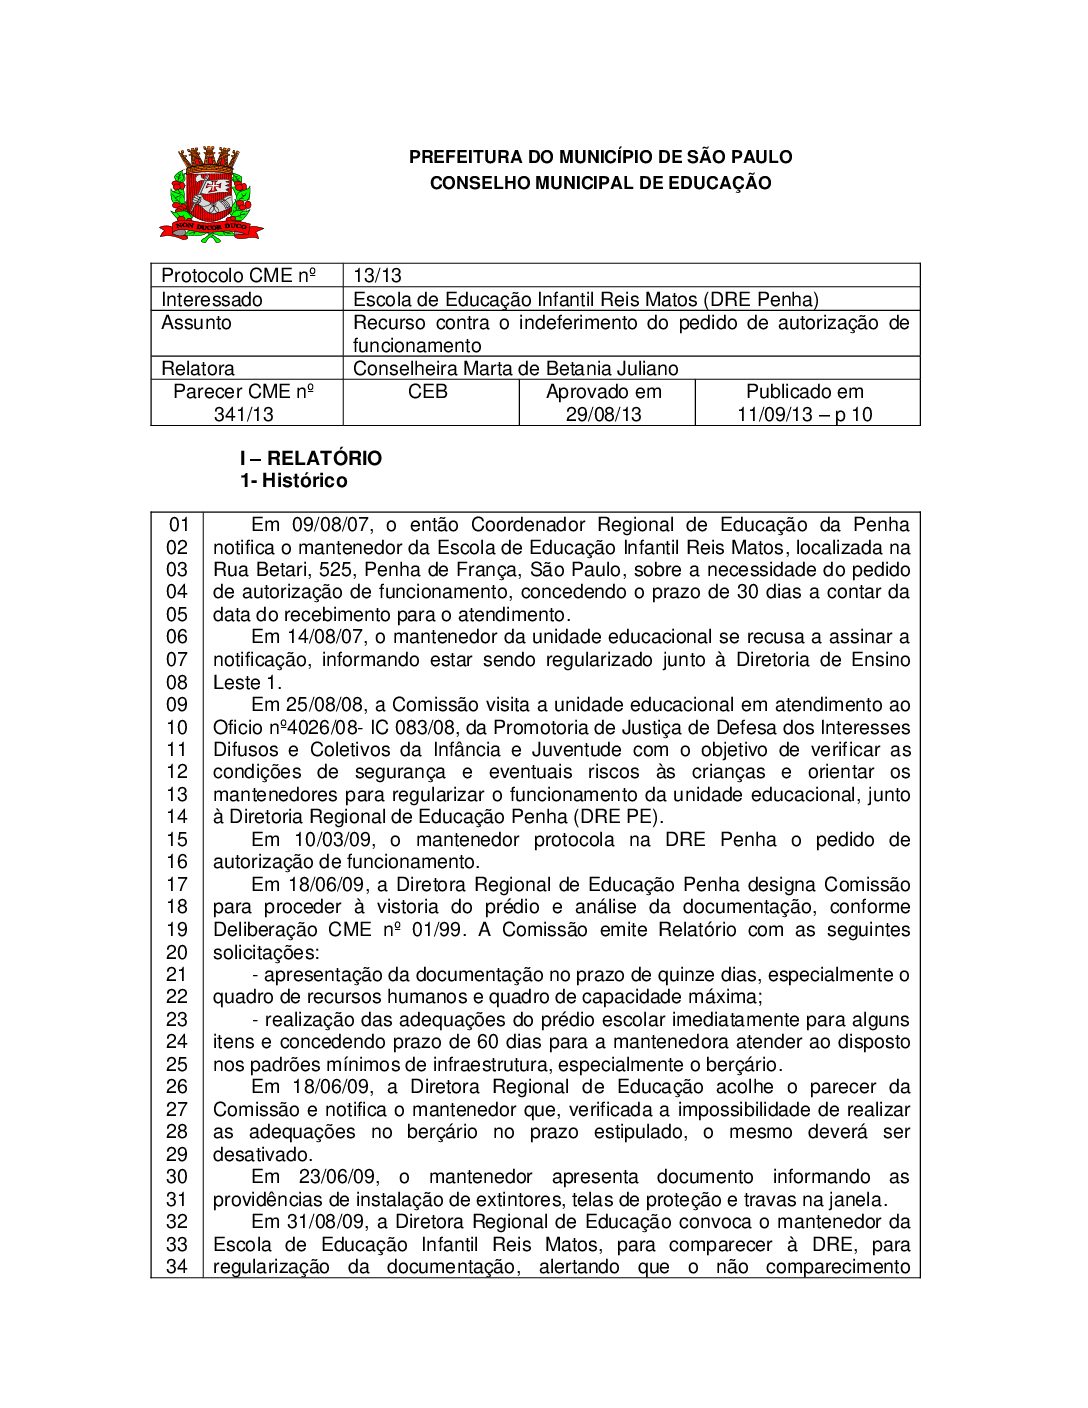 Parecer CME nº 341/2013 - Escola de Educação Infantil Reis Matos (DRE Penha) - Recurso contra o indeferimento do pedido de autorização de funcionamento 